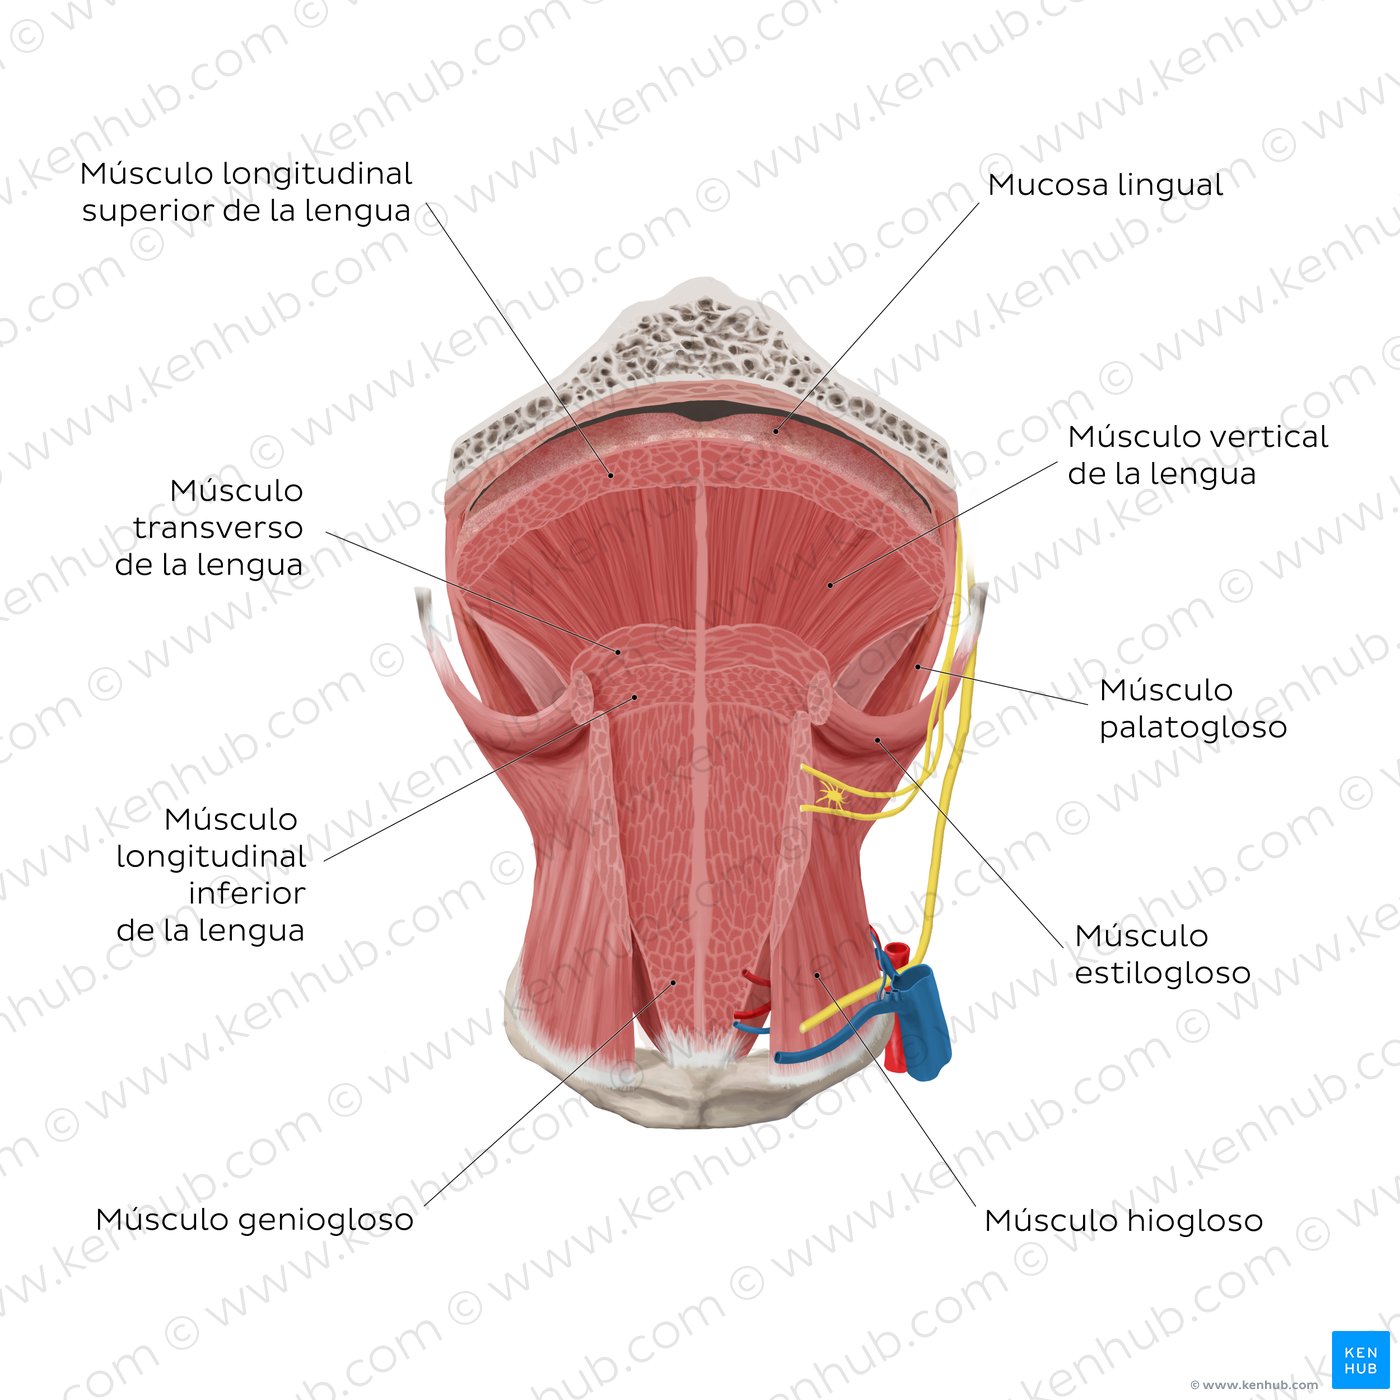 Músculos de la lengua: corte coronal